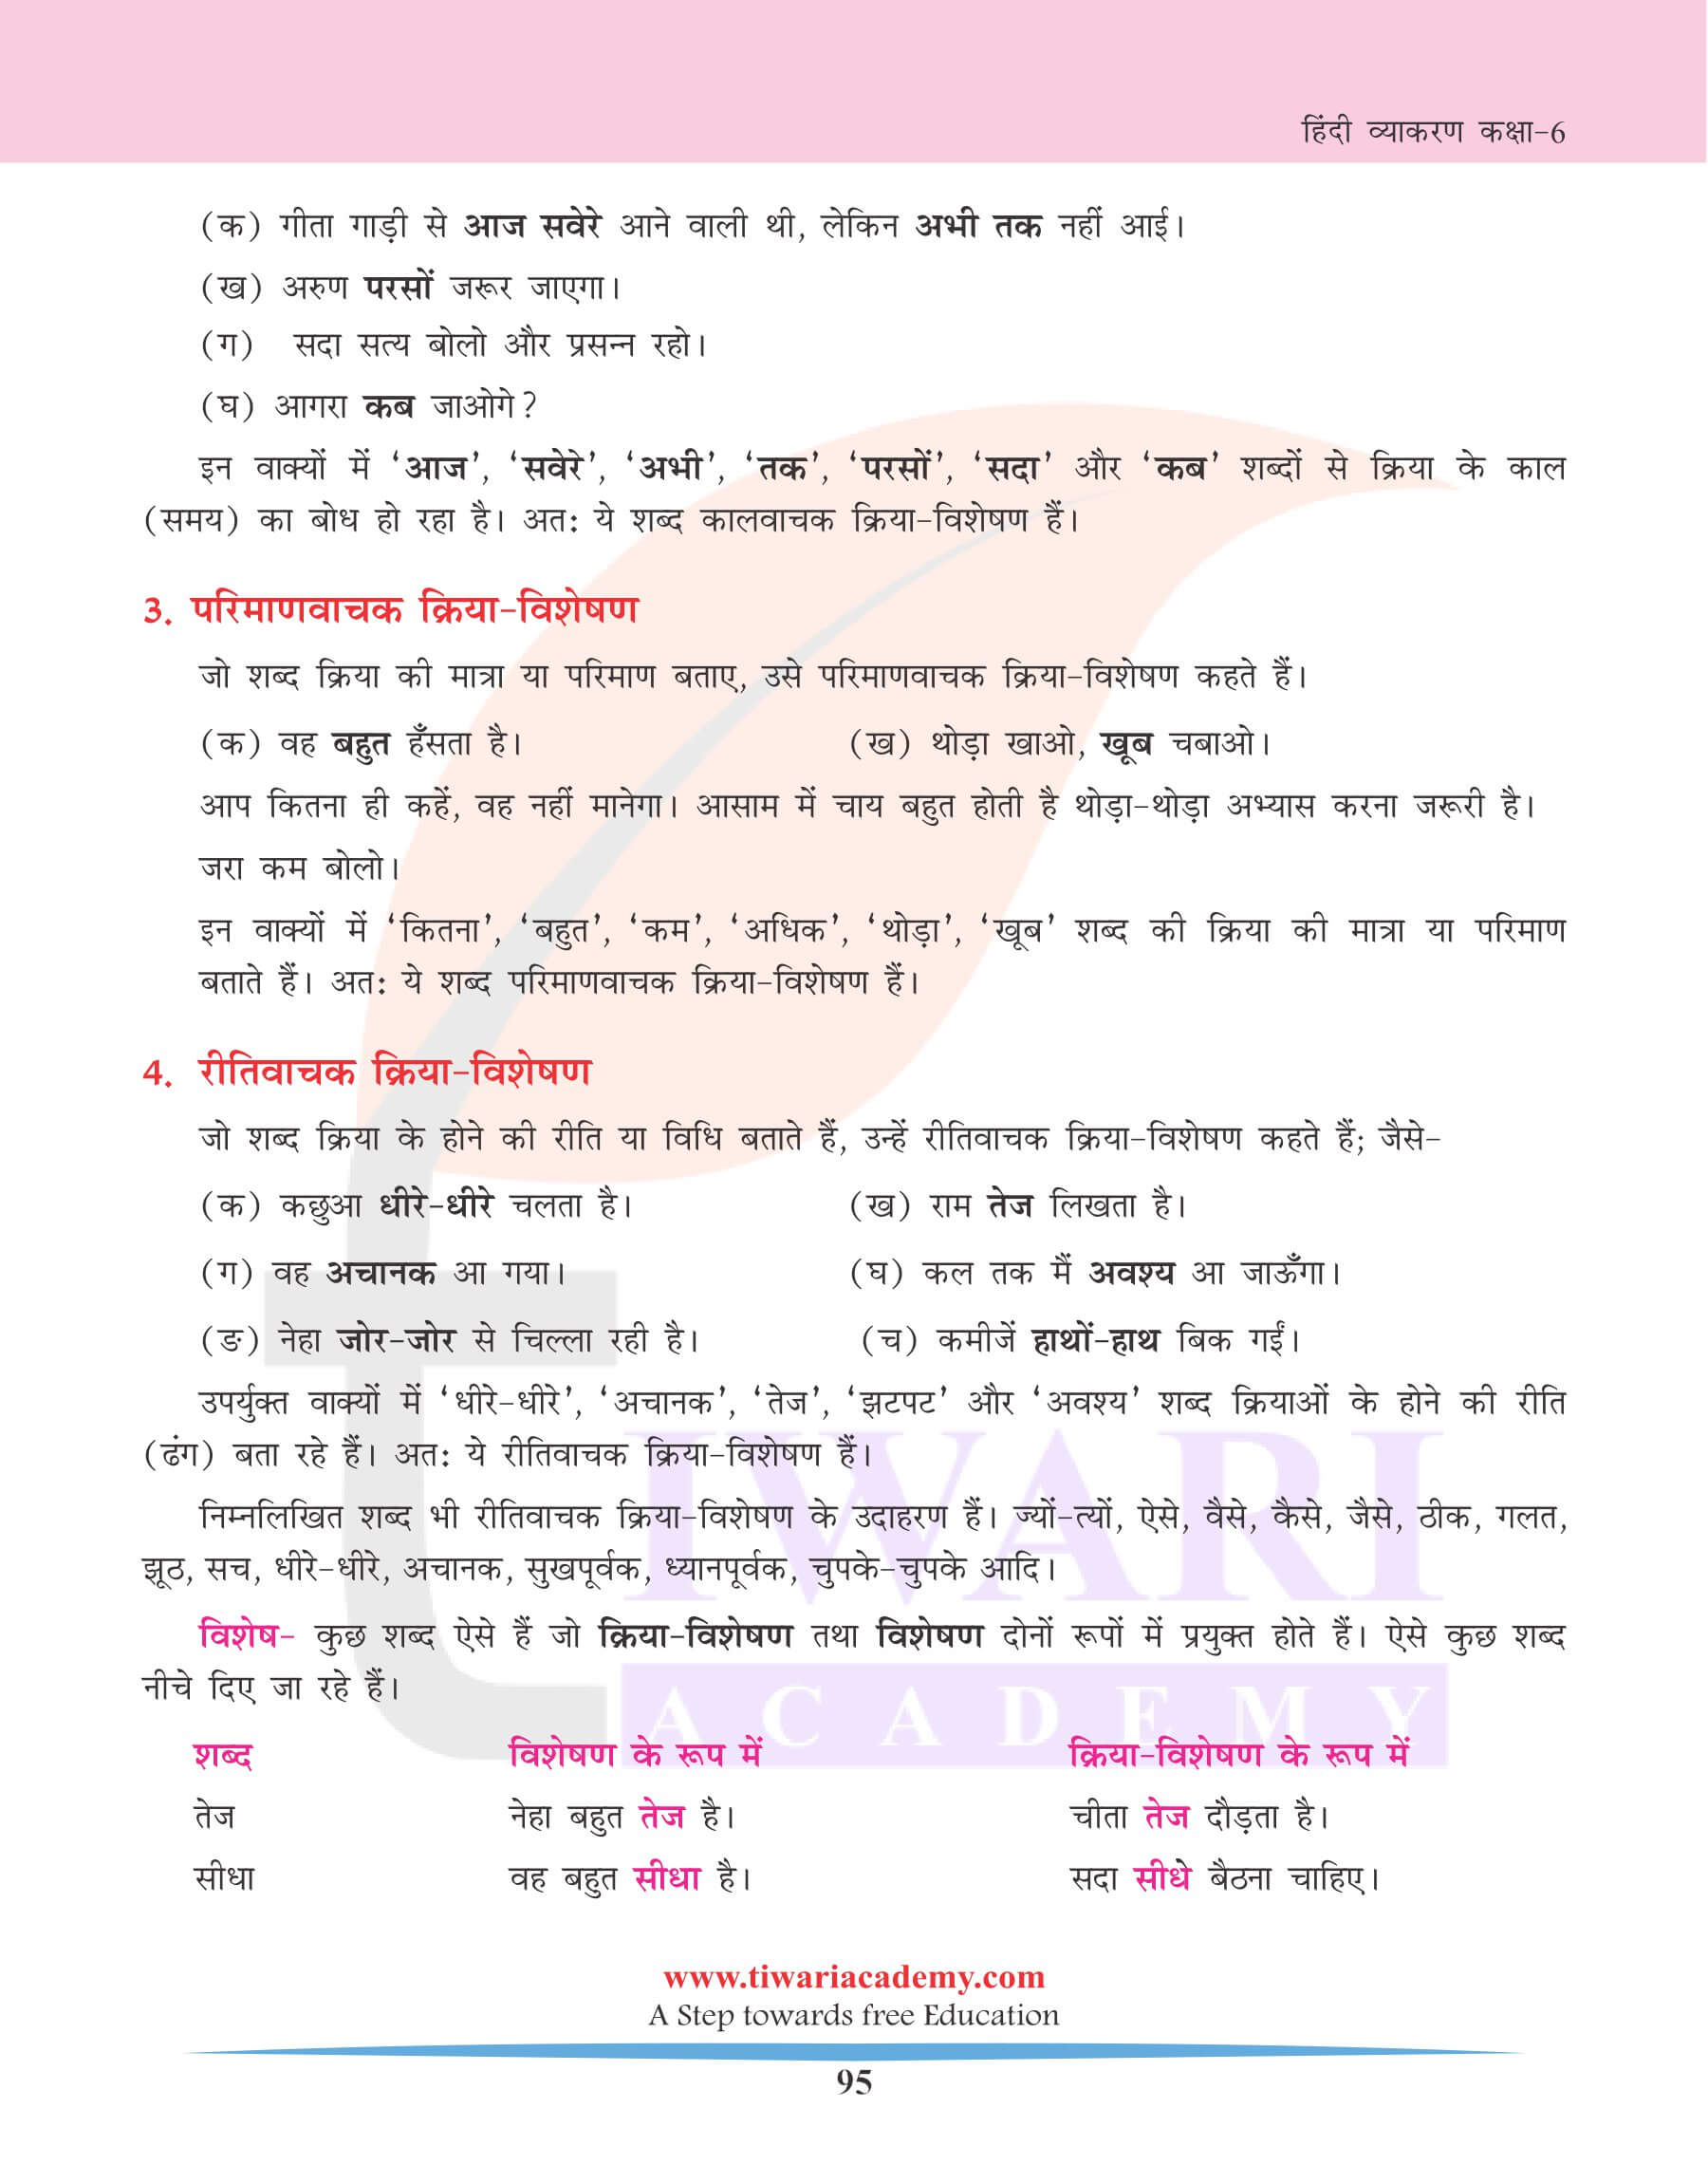 कक्षा 6 हिंदी व्याकरण अध्याय 20 क्रिया-विशेषण के उदाहरण